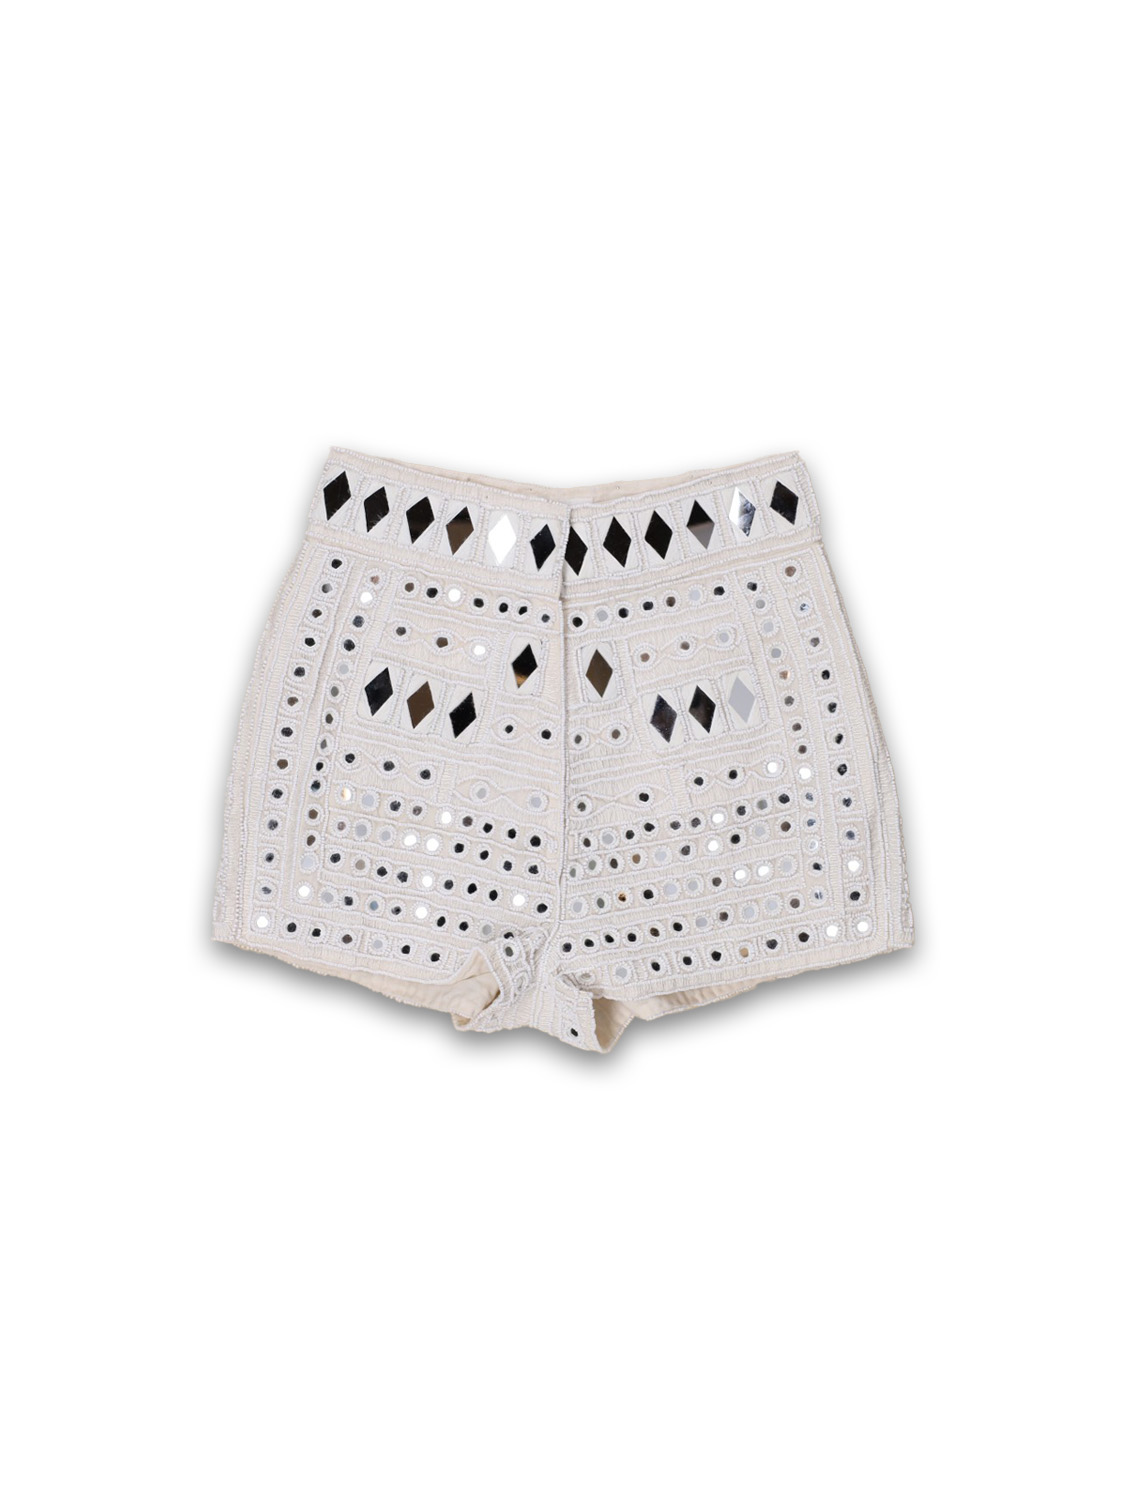 Antik Batik Mahani shorts with mirror details  creme 36